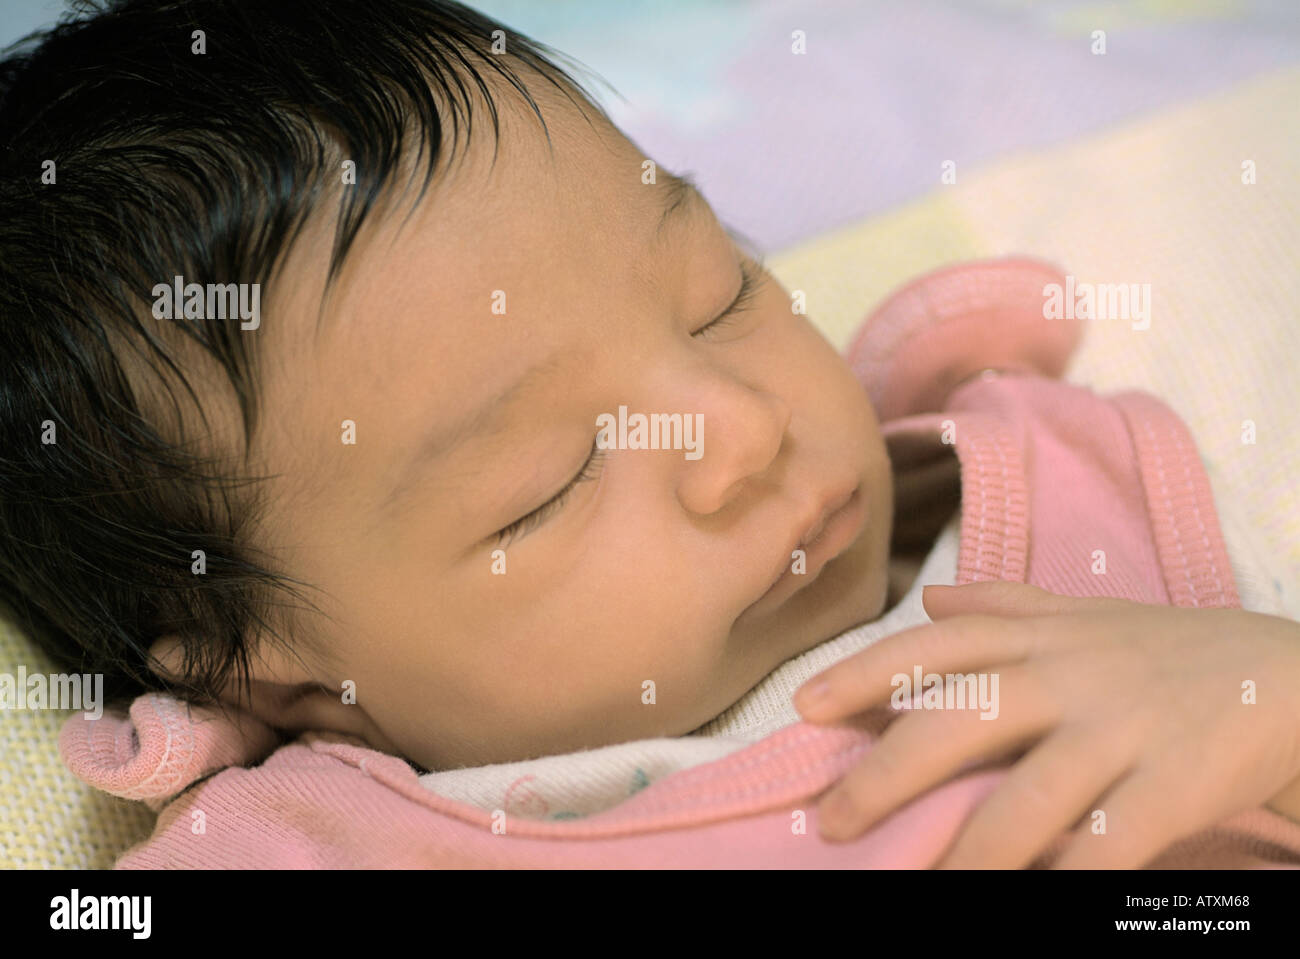 Sleeping newborn baby girl. Stock Photo